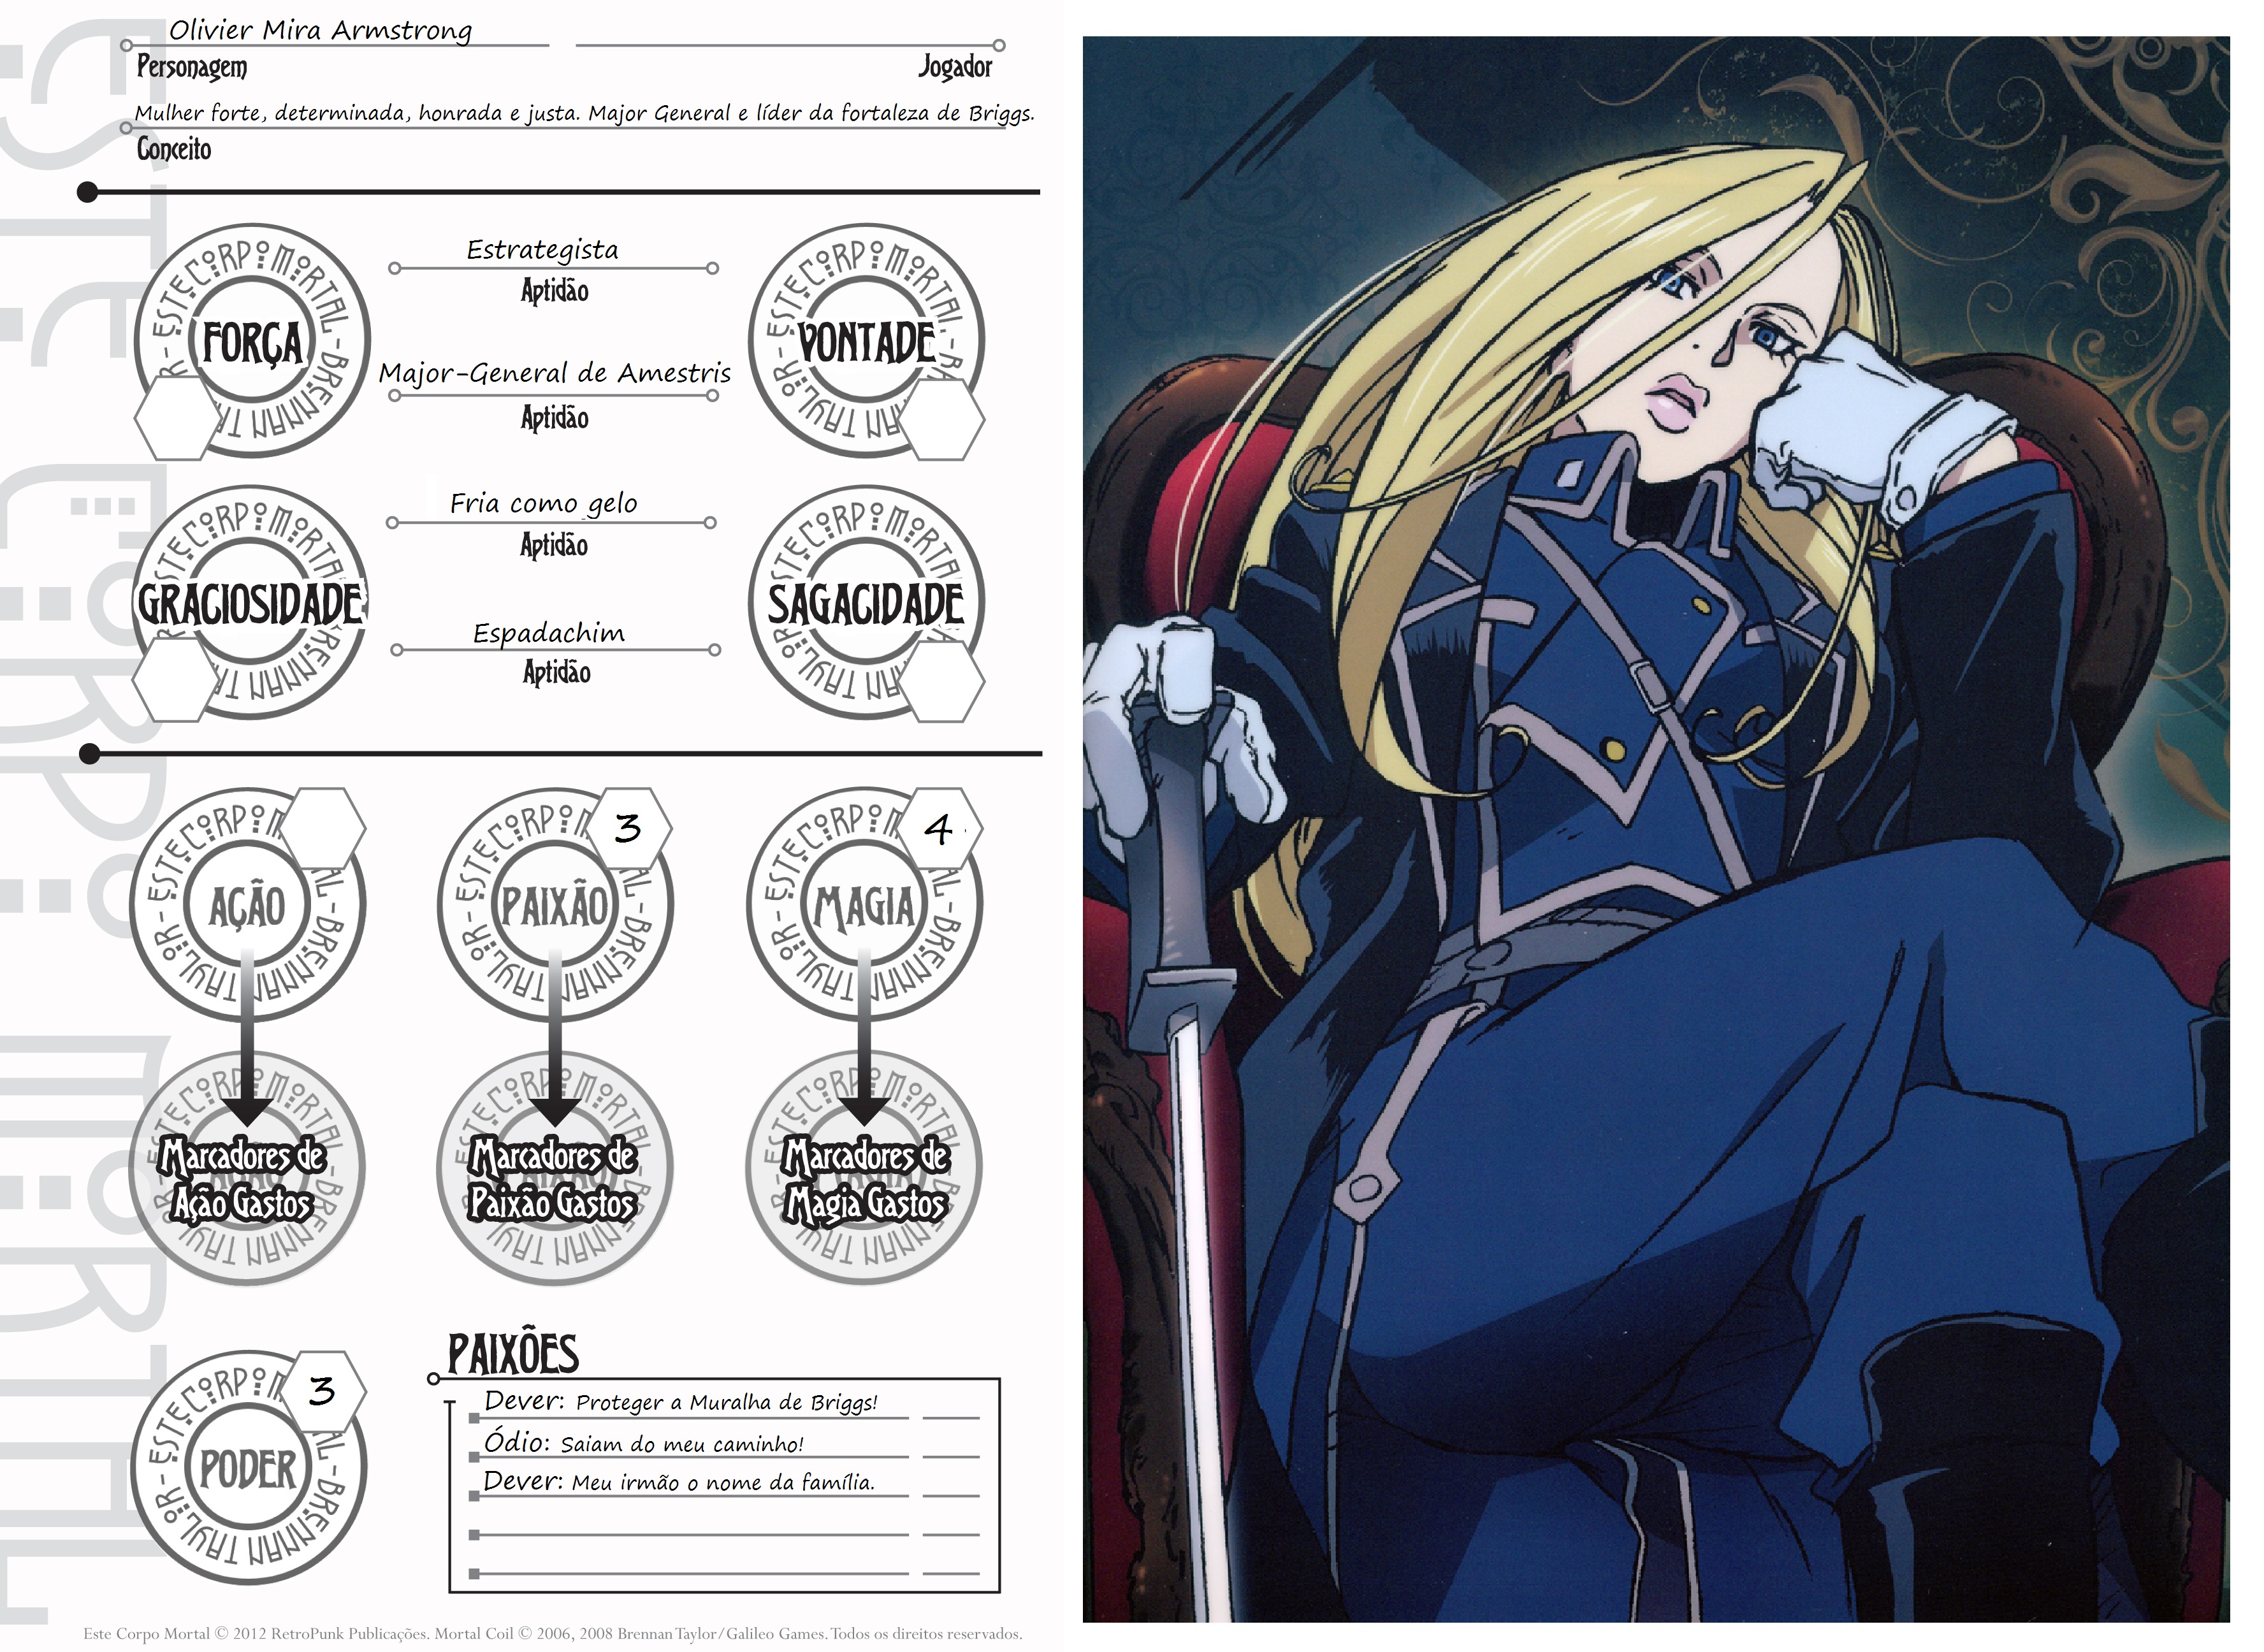 Orden cronológico para ver Fullmetal Alchemist y Brotherhood